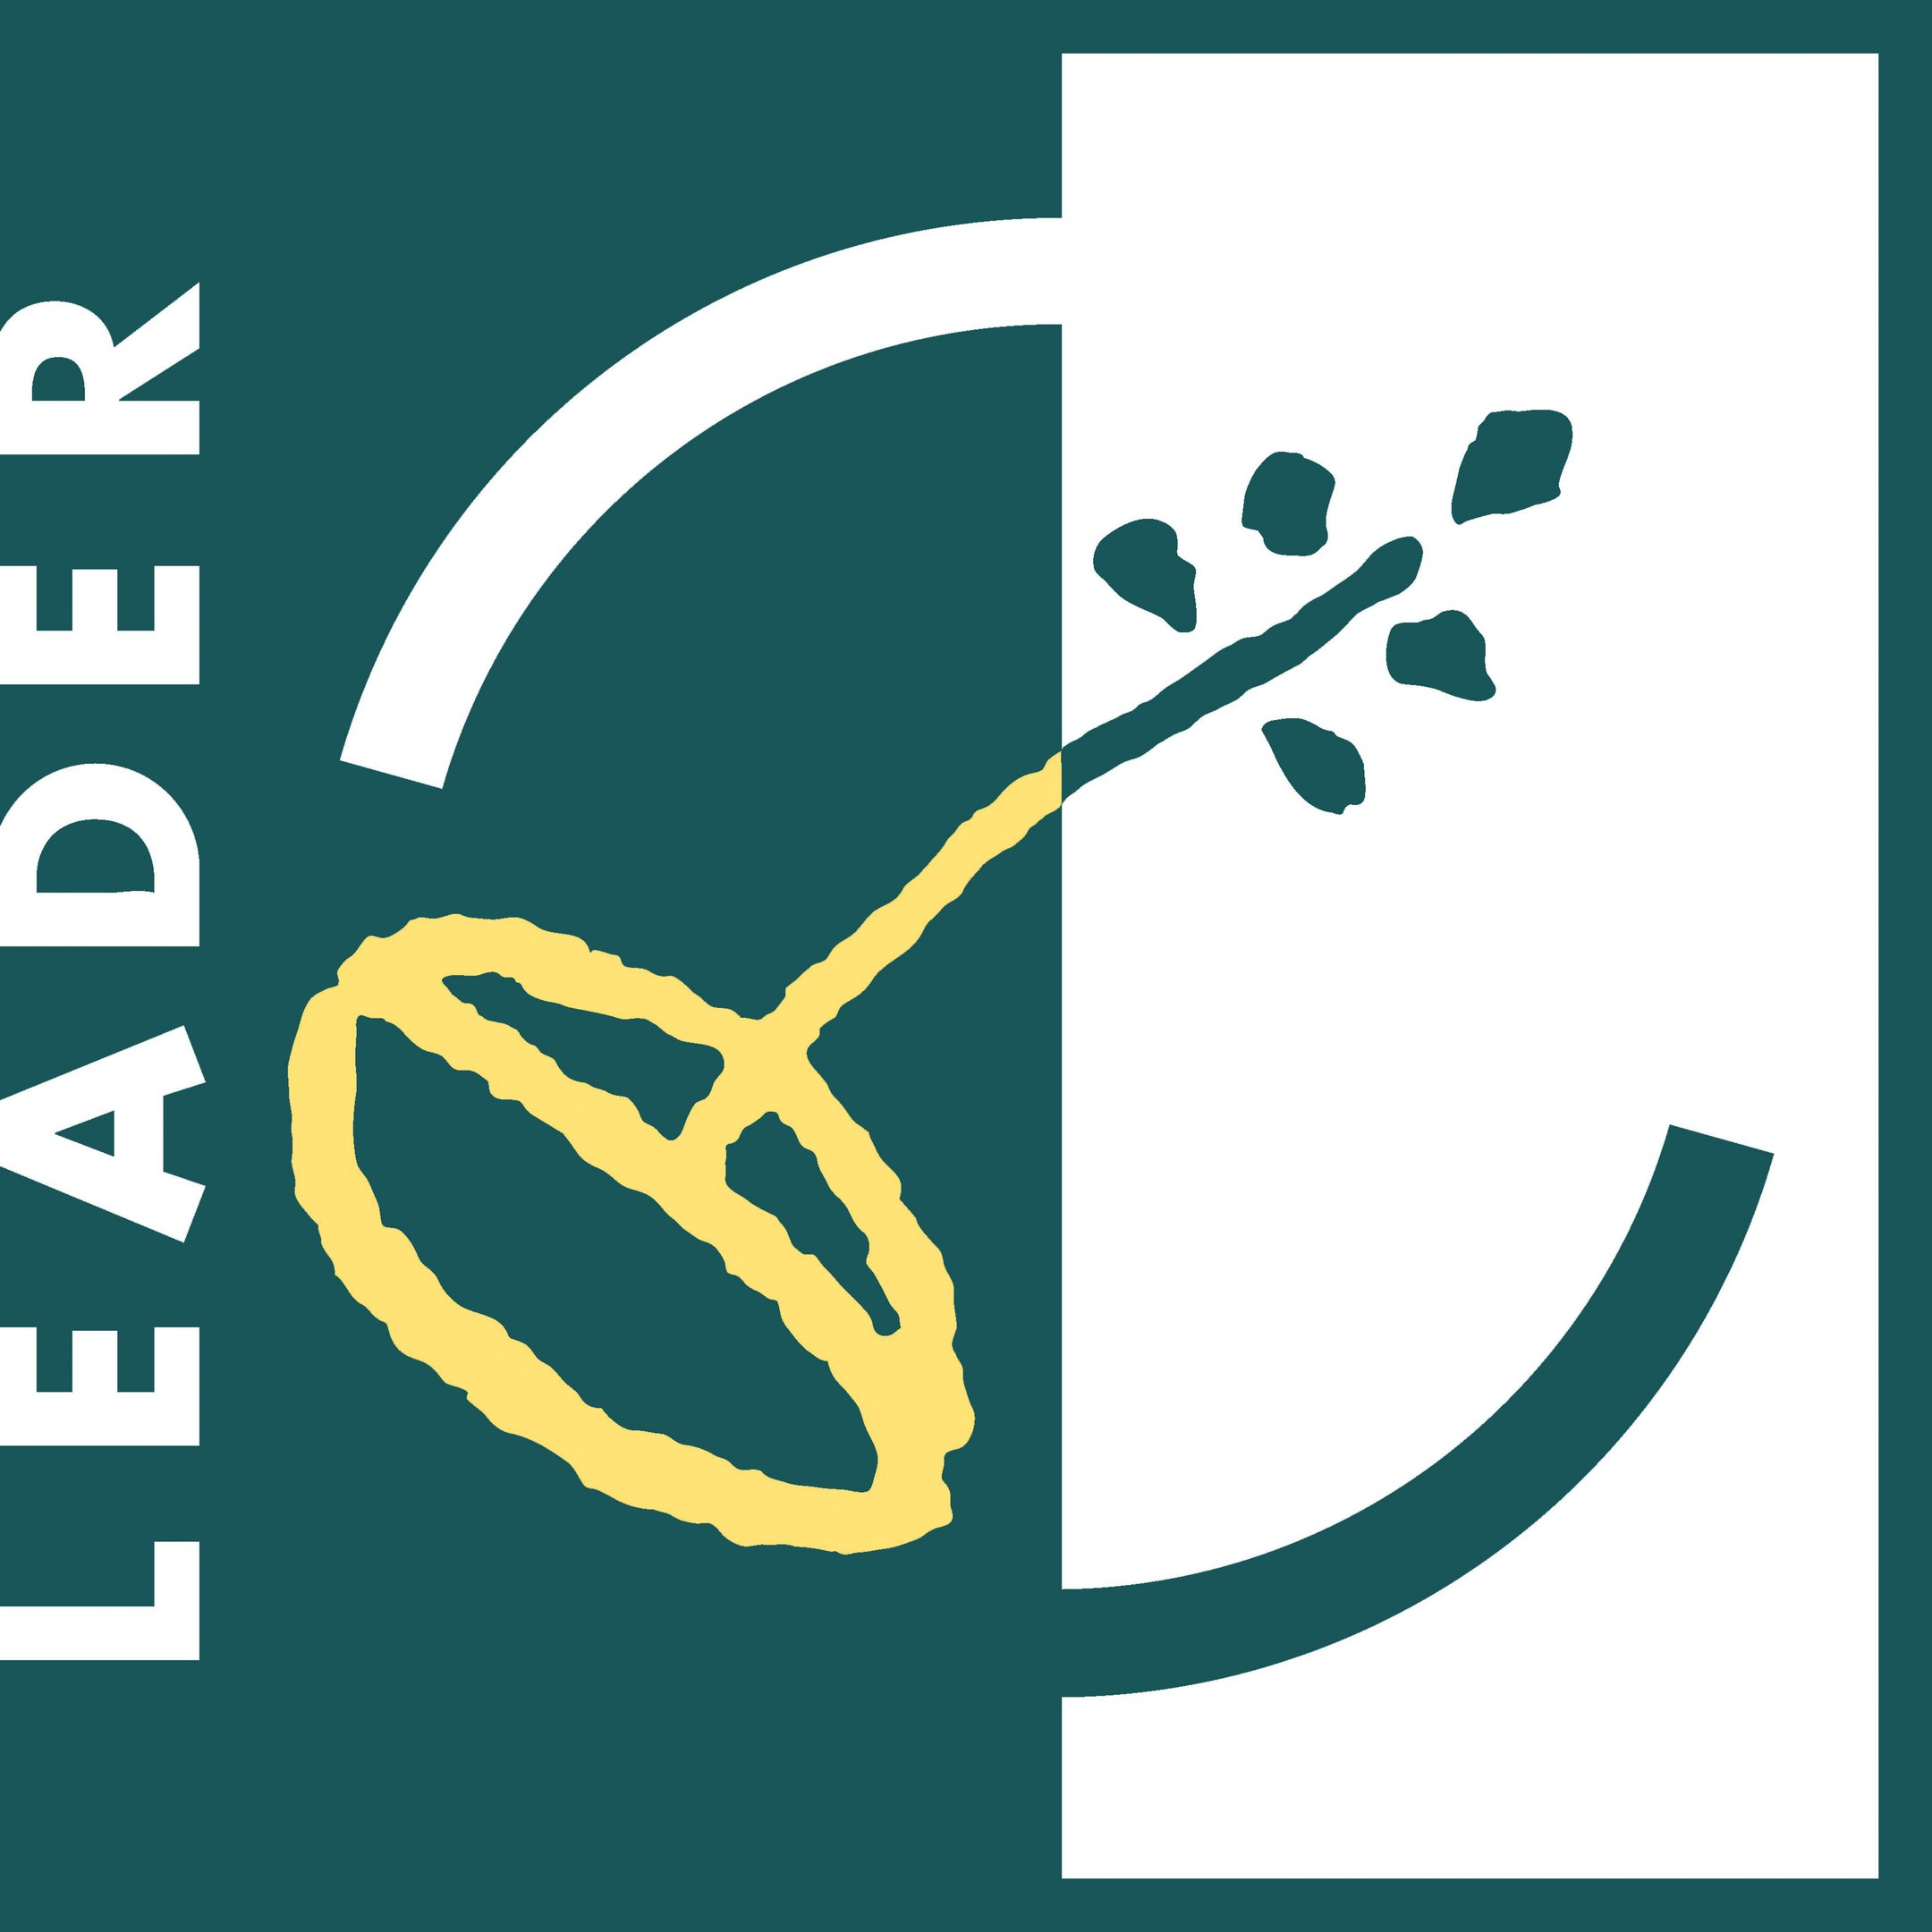 leader-logo-rgb-eu-iso.jpg (140 KB)